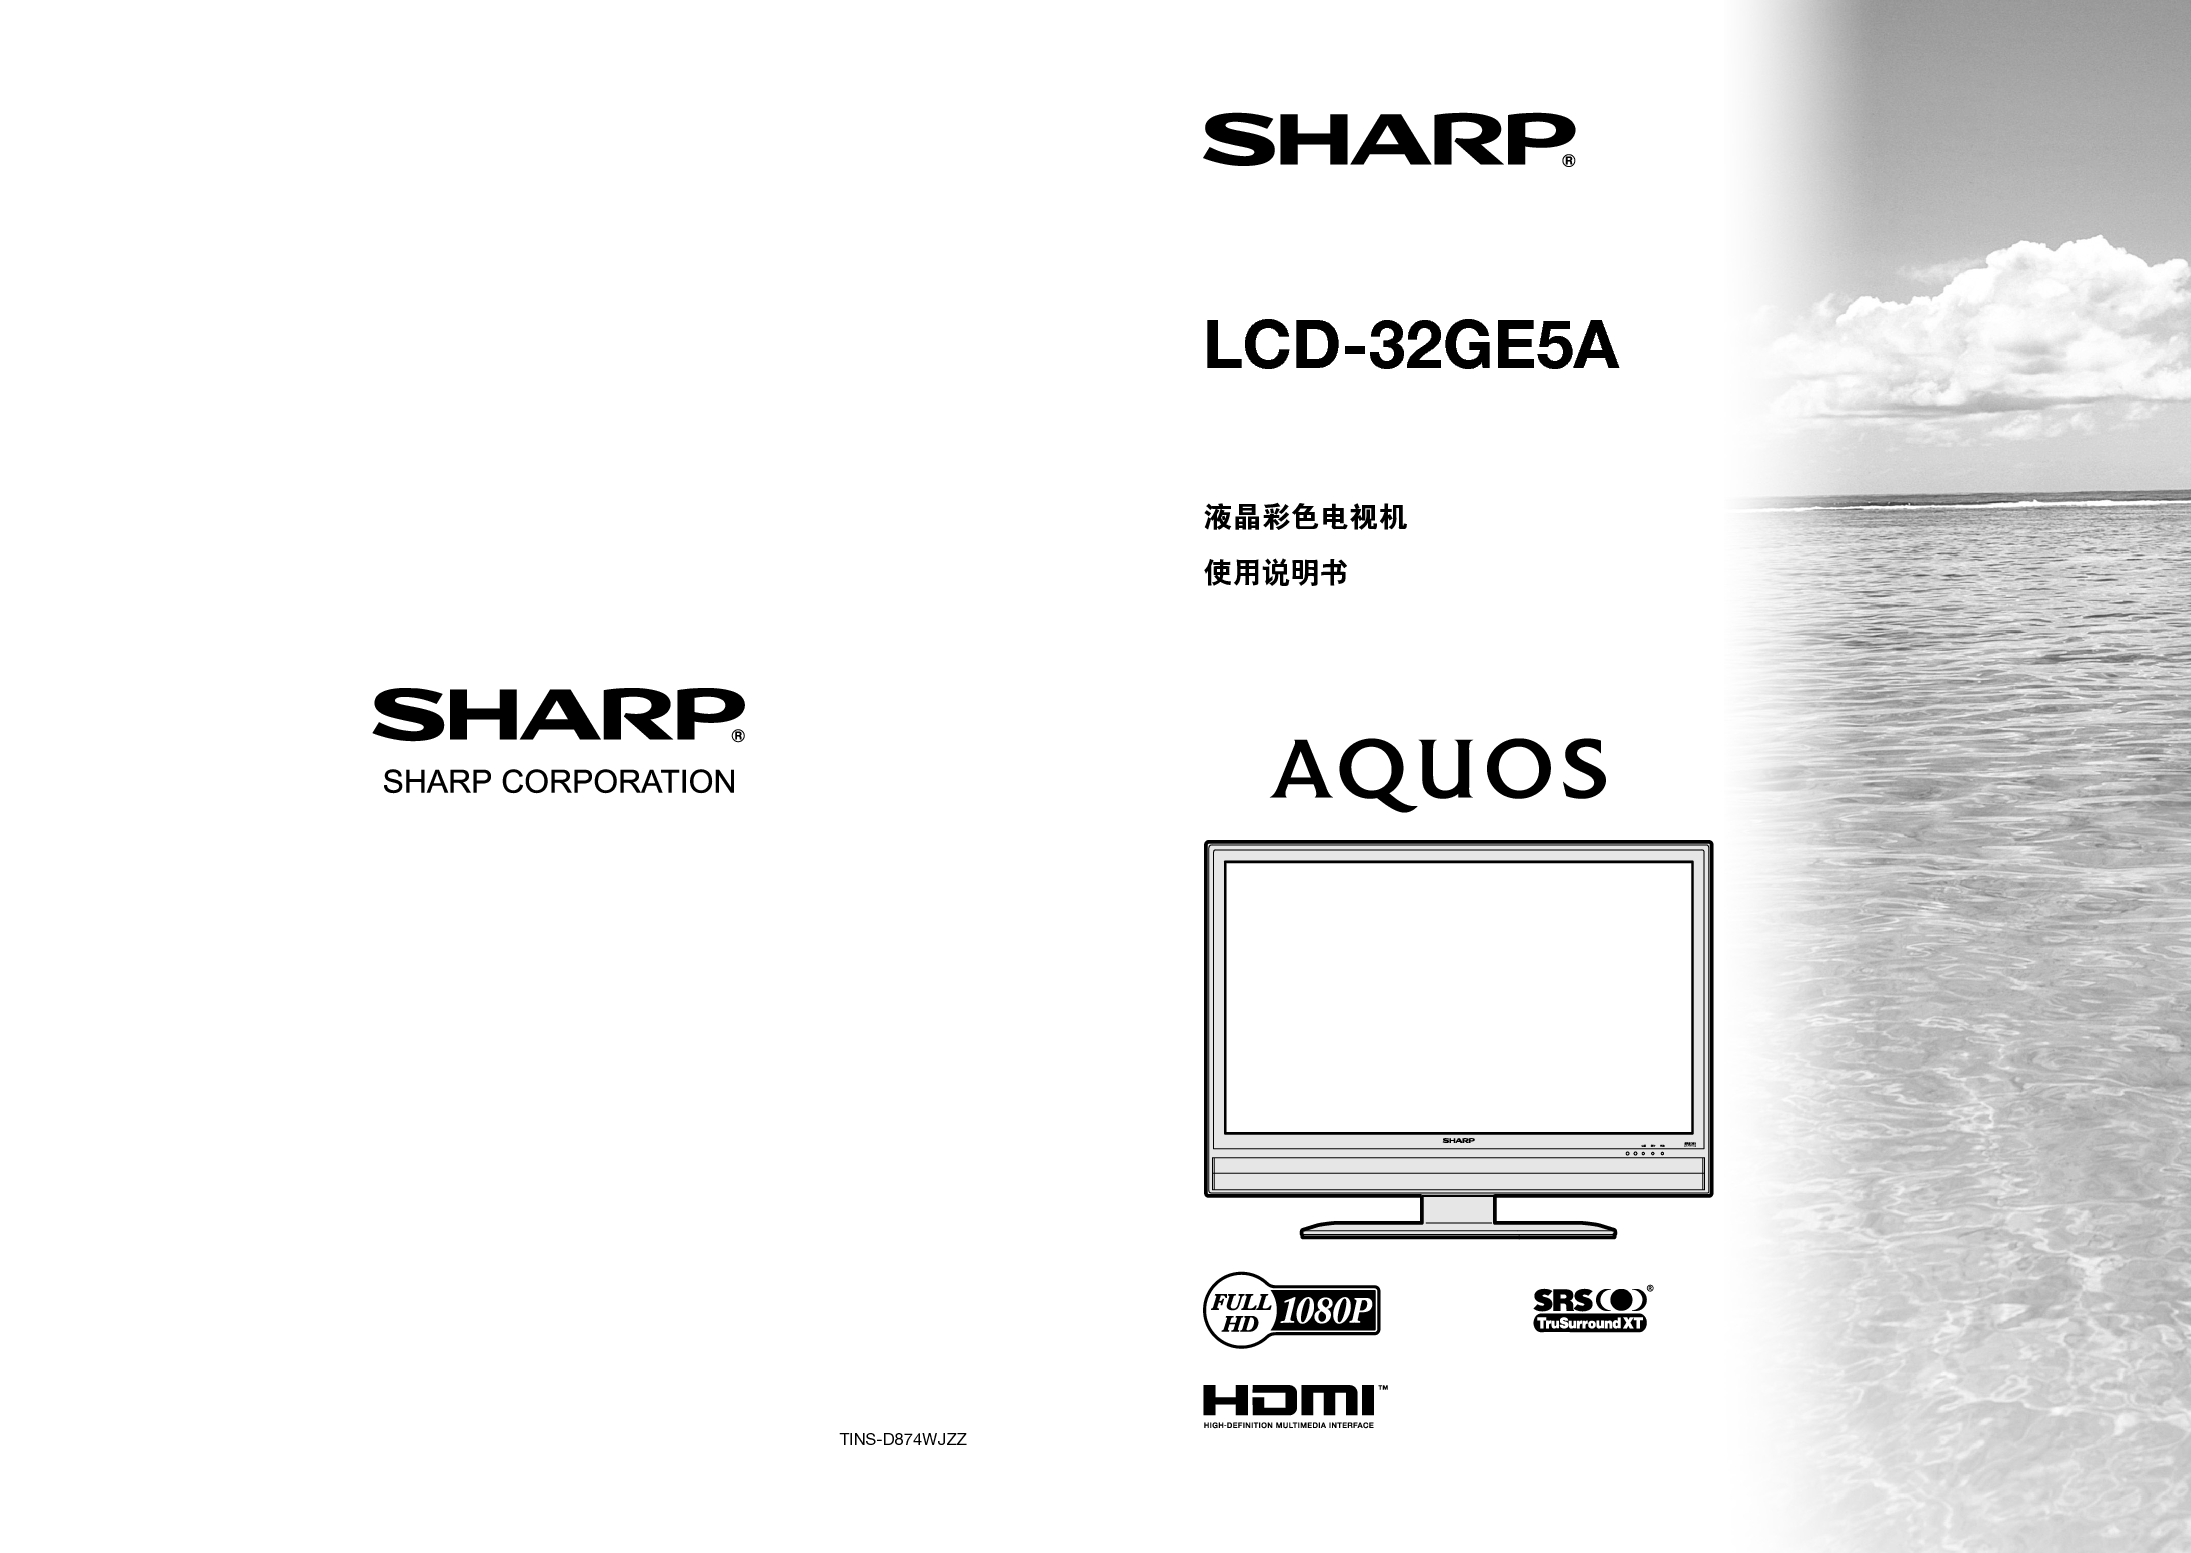 夏普 Sharp LCD-32GE5A 说明书 封面